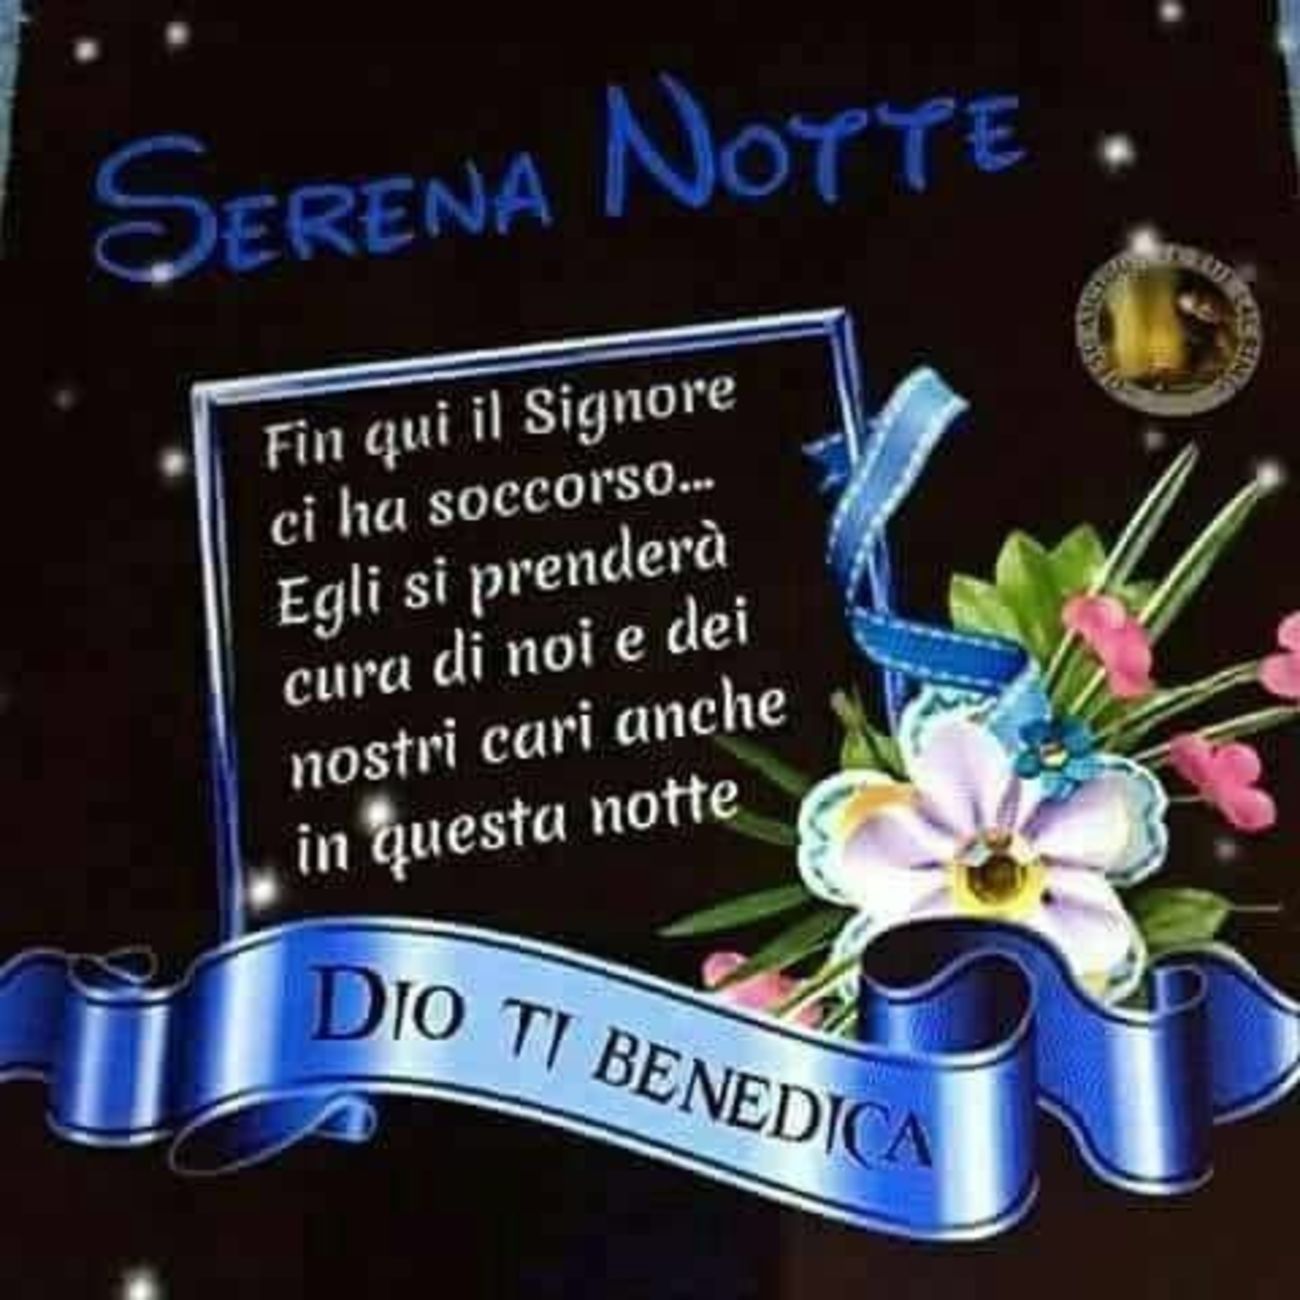 Serena Notte Dio Ti benedica 2